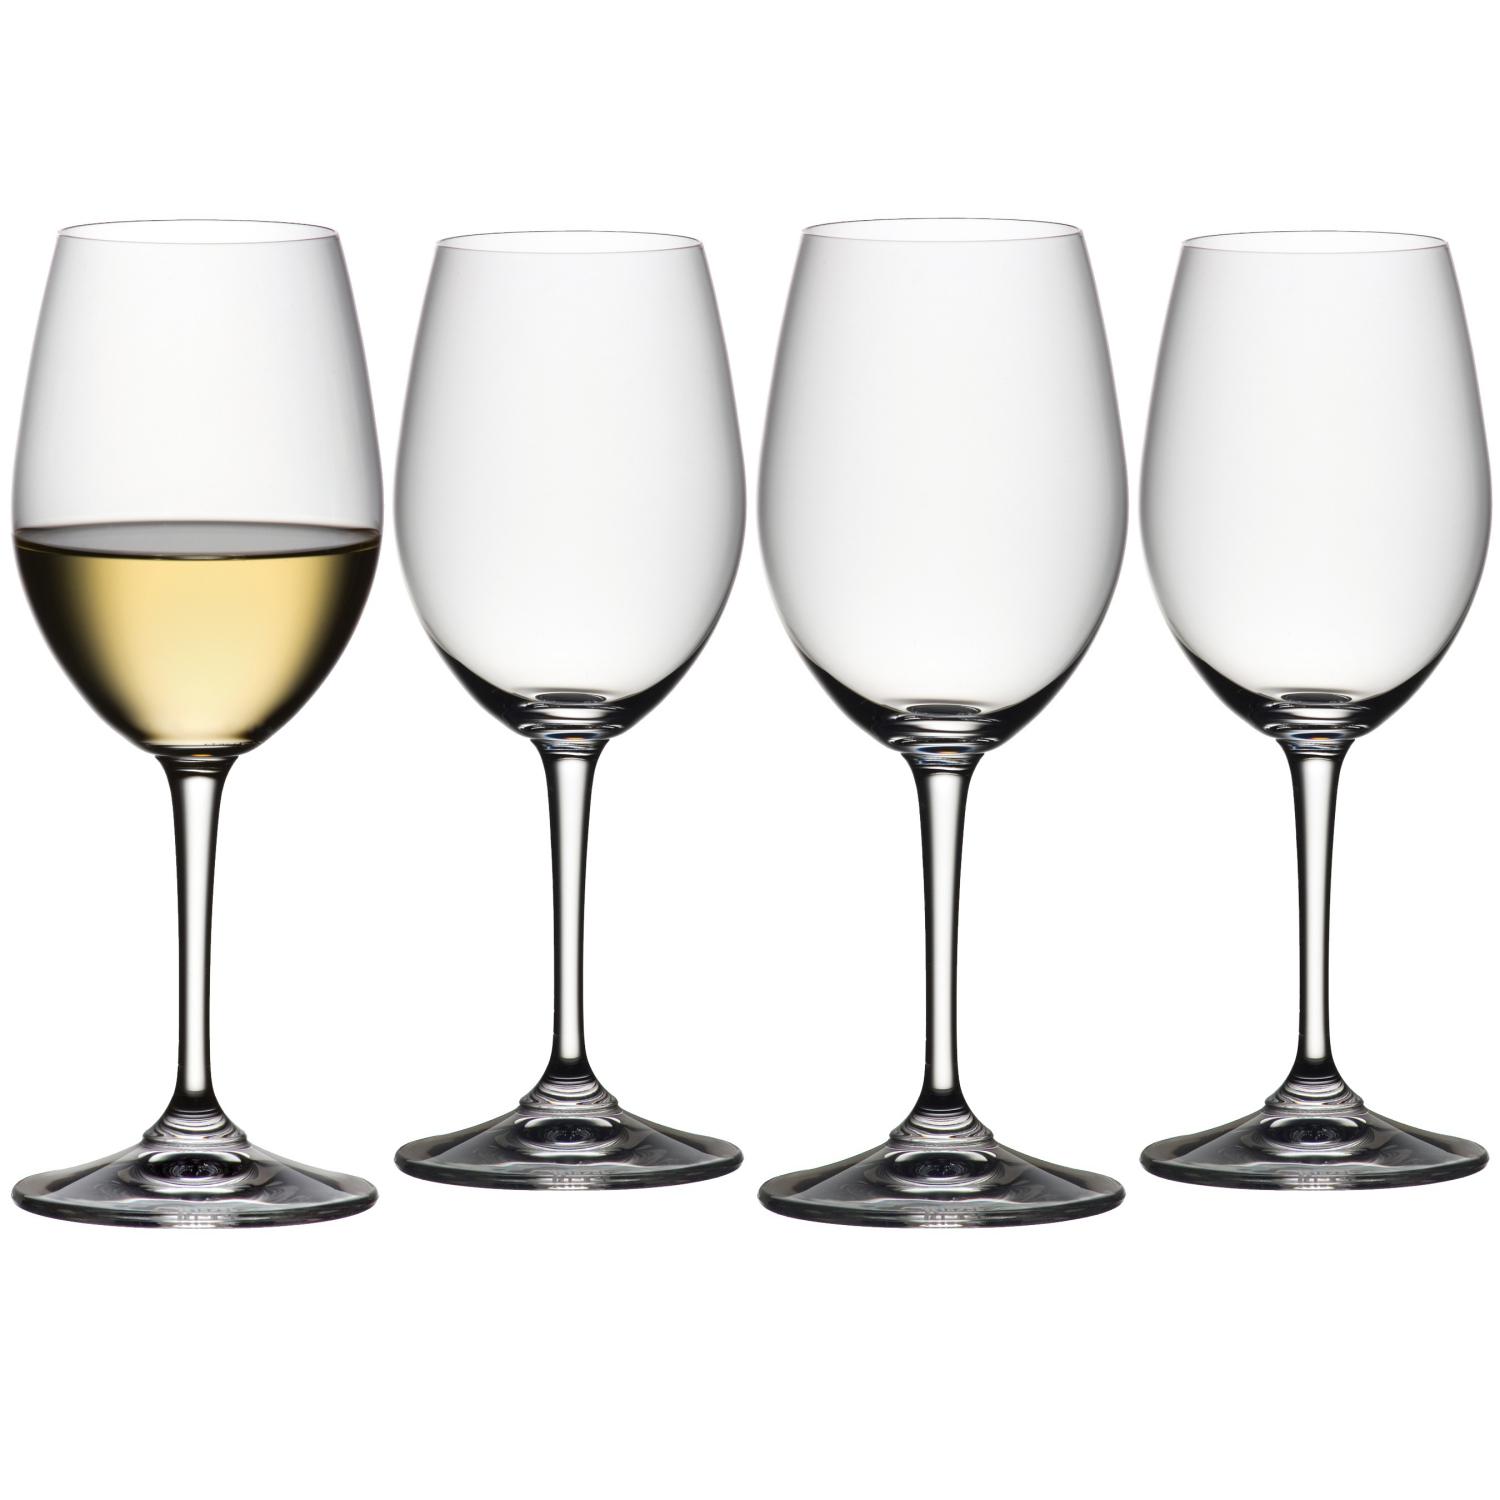 4 бокала для белого вина RIEDEL Vivant White Wine 340 мл (арт. 0484/01)